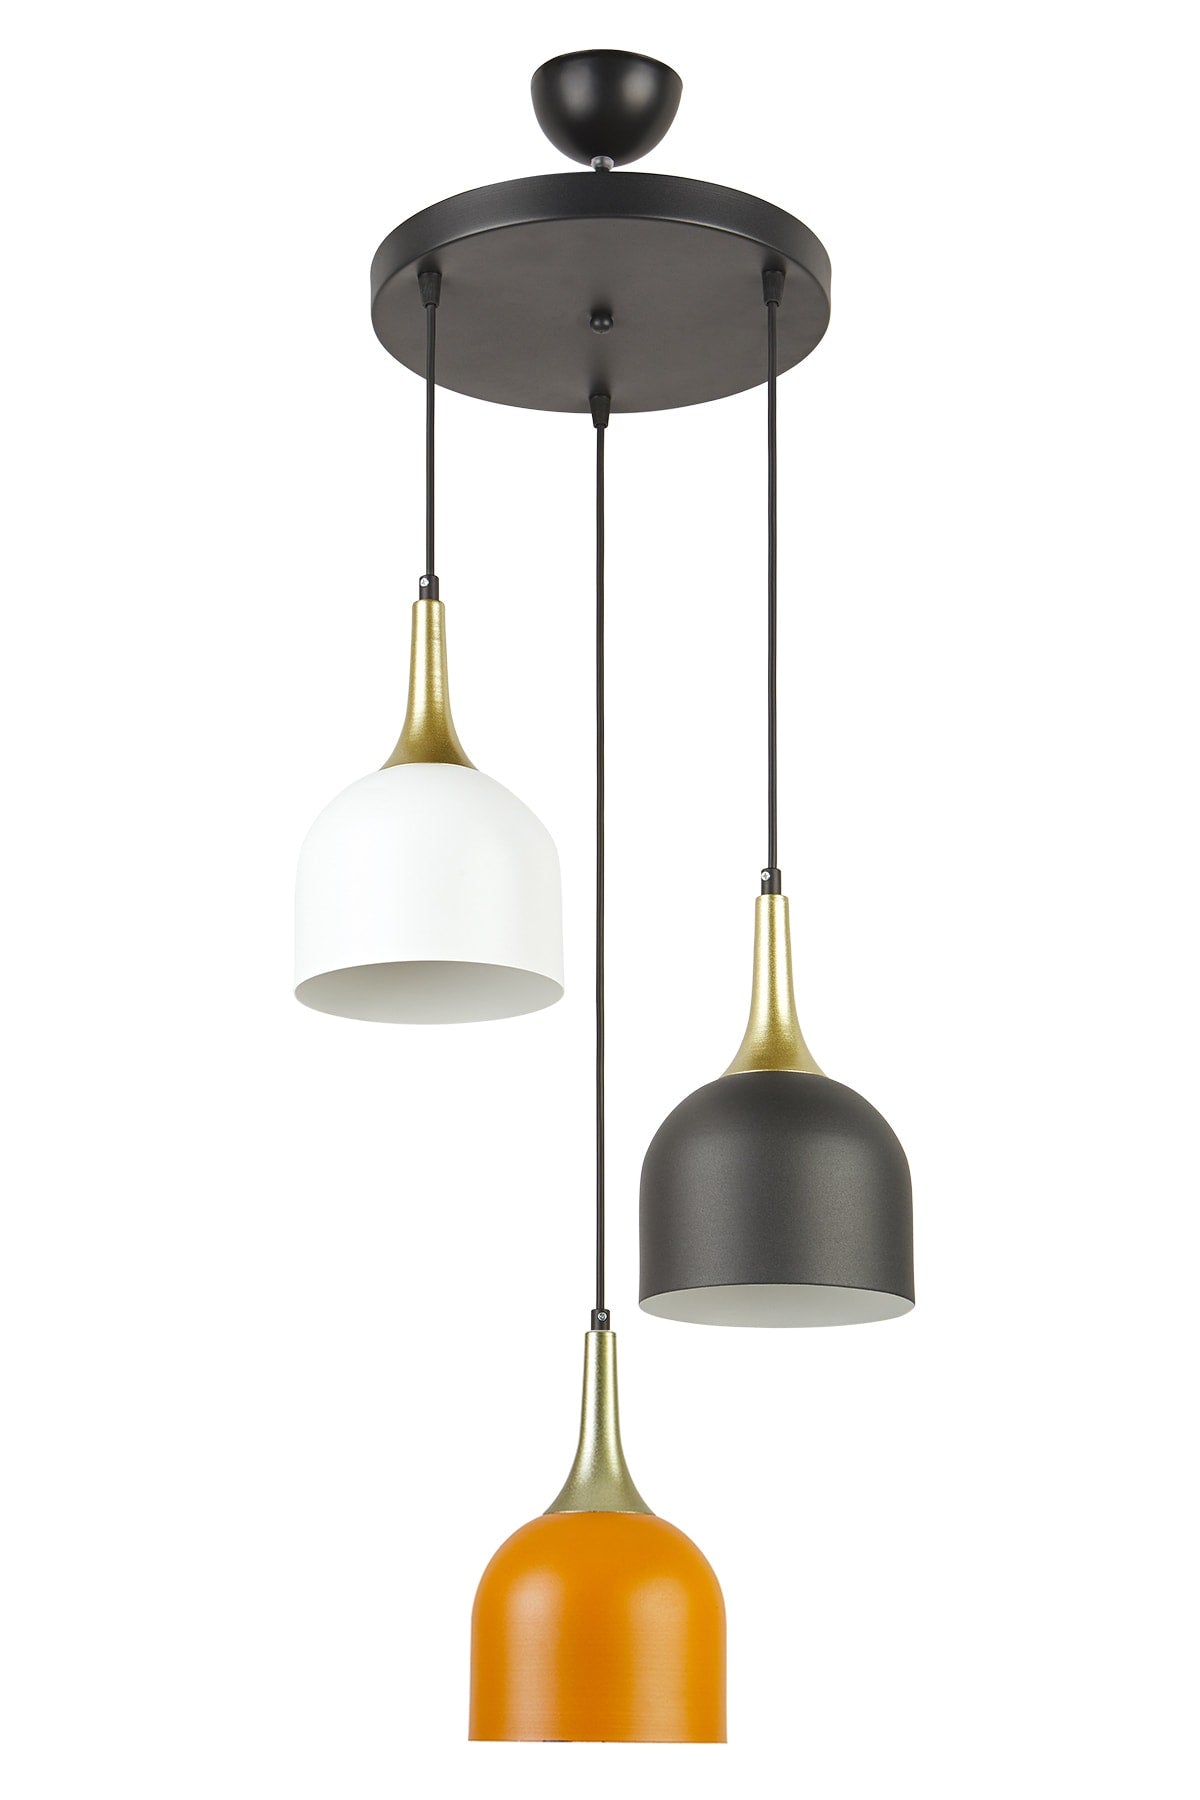 Reina Modern Design White - Black - Orange Color Living Room-kitchen-bedroom-cafe - 3-Piece Pendant Lamp Chandelier